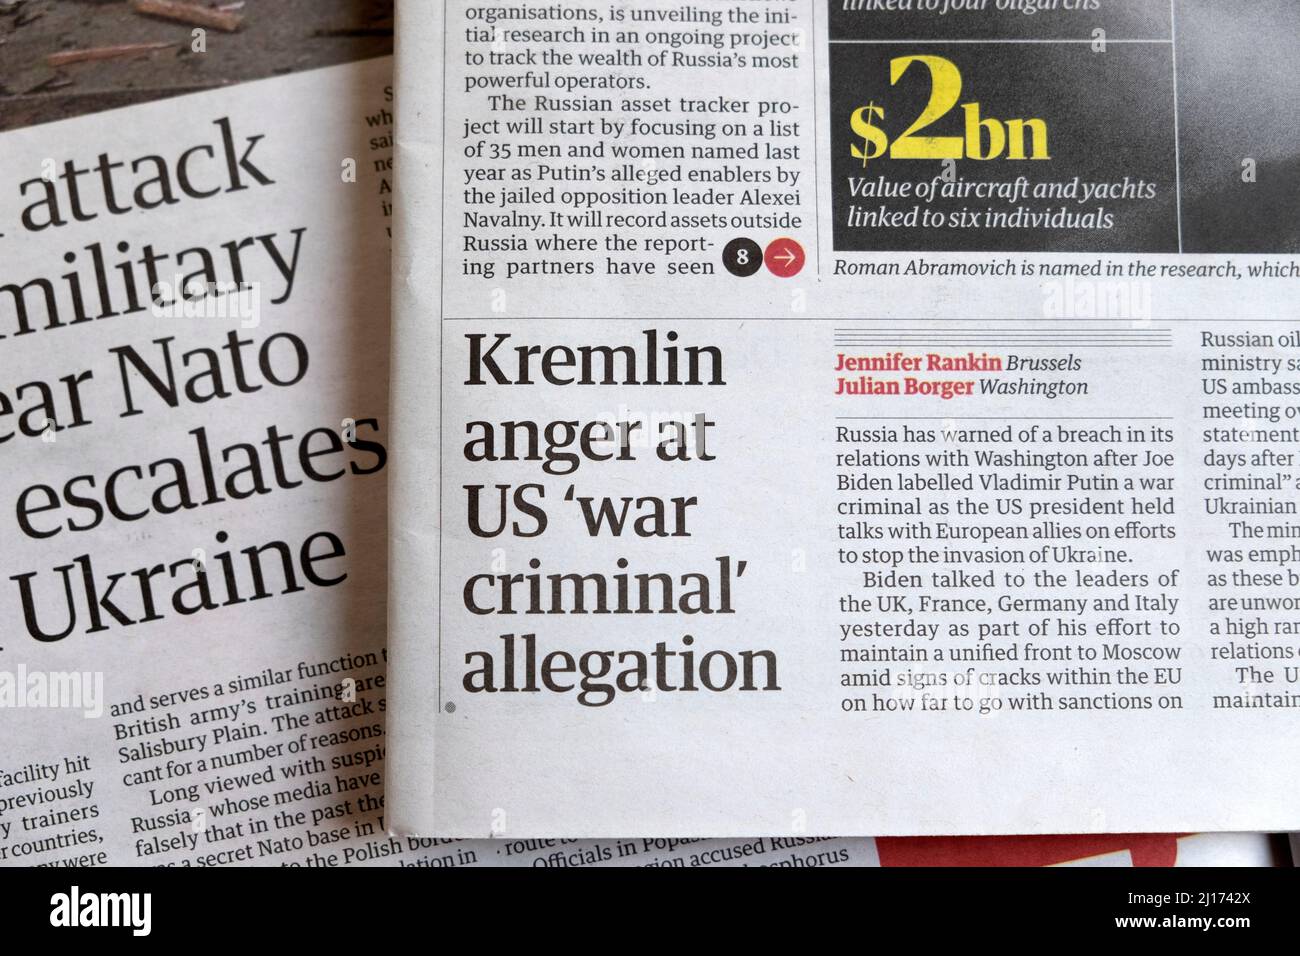 Kremlin Anger At US War Criminal Allegation Guardian Newspaper Headline Article Clipping